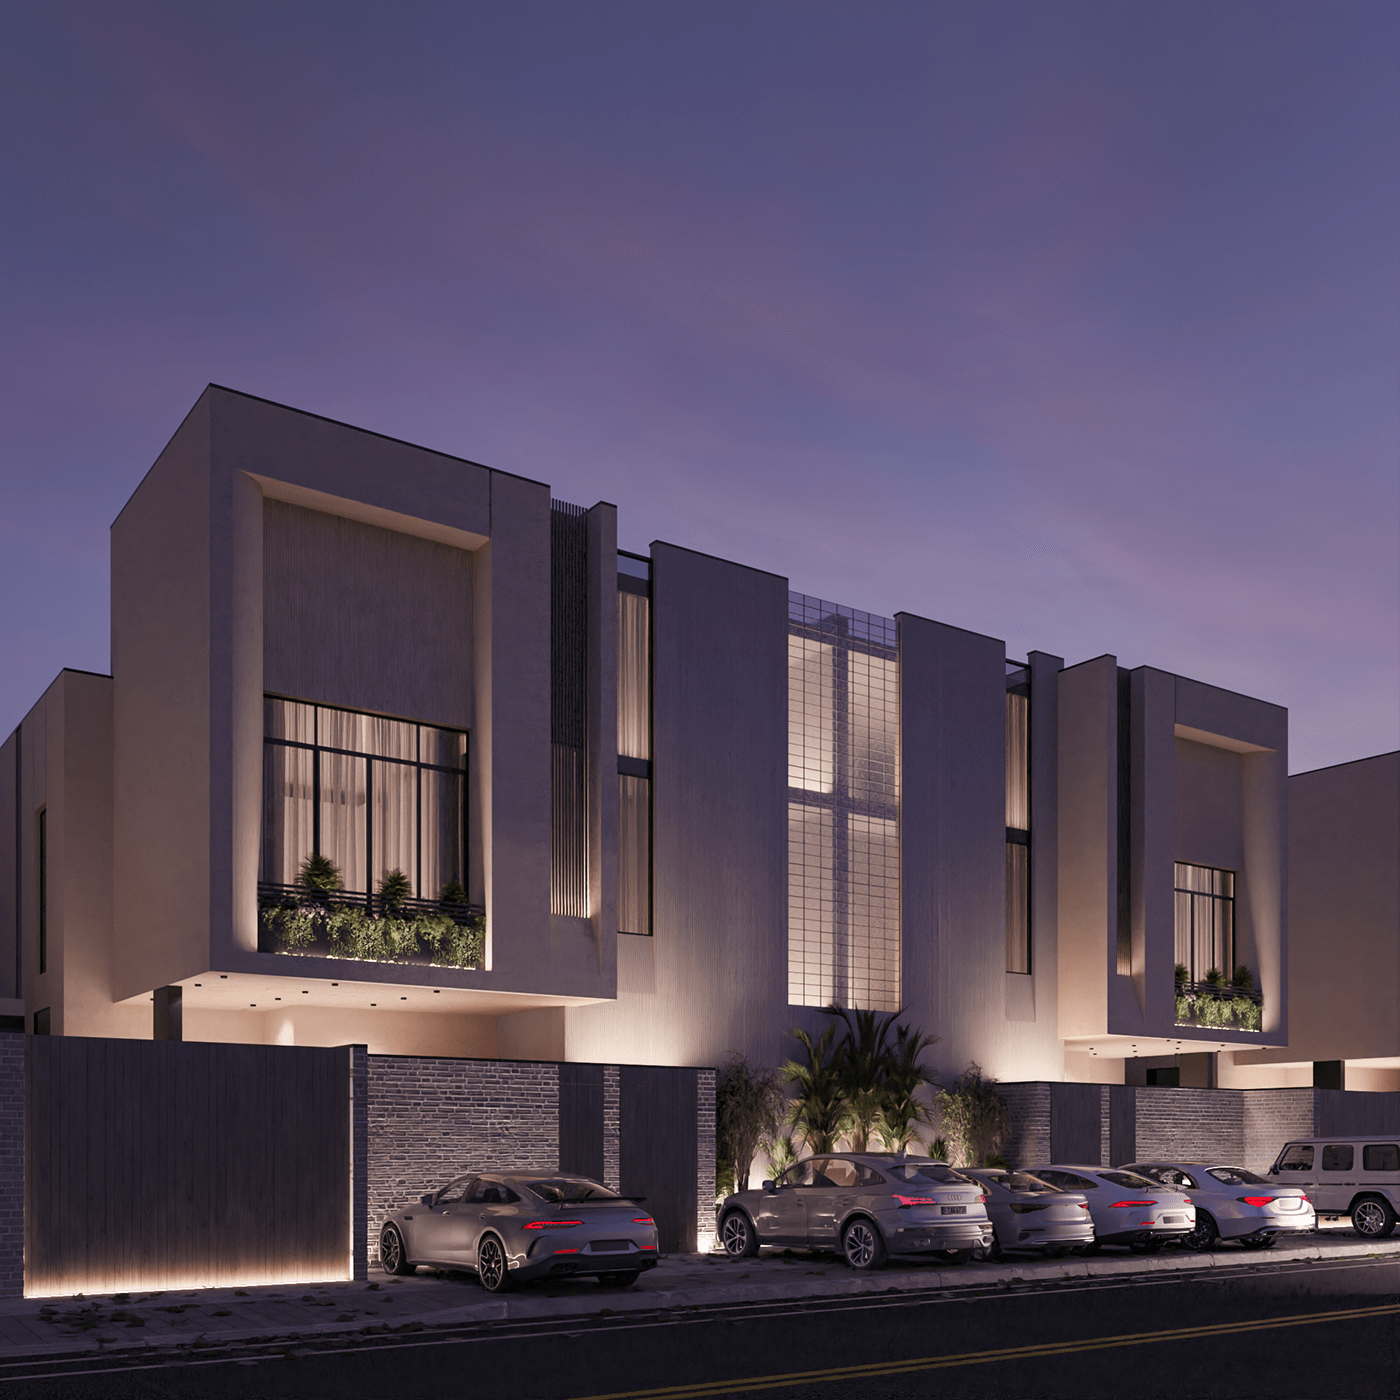 architecture exterior facade Facade design KSA Saudi Arabia Villa villadesign attached villa